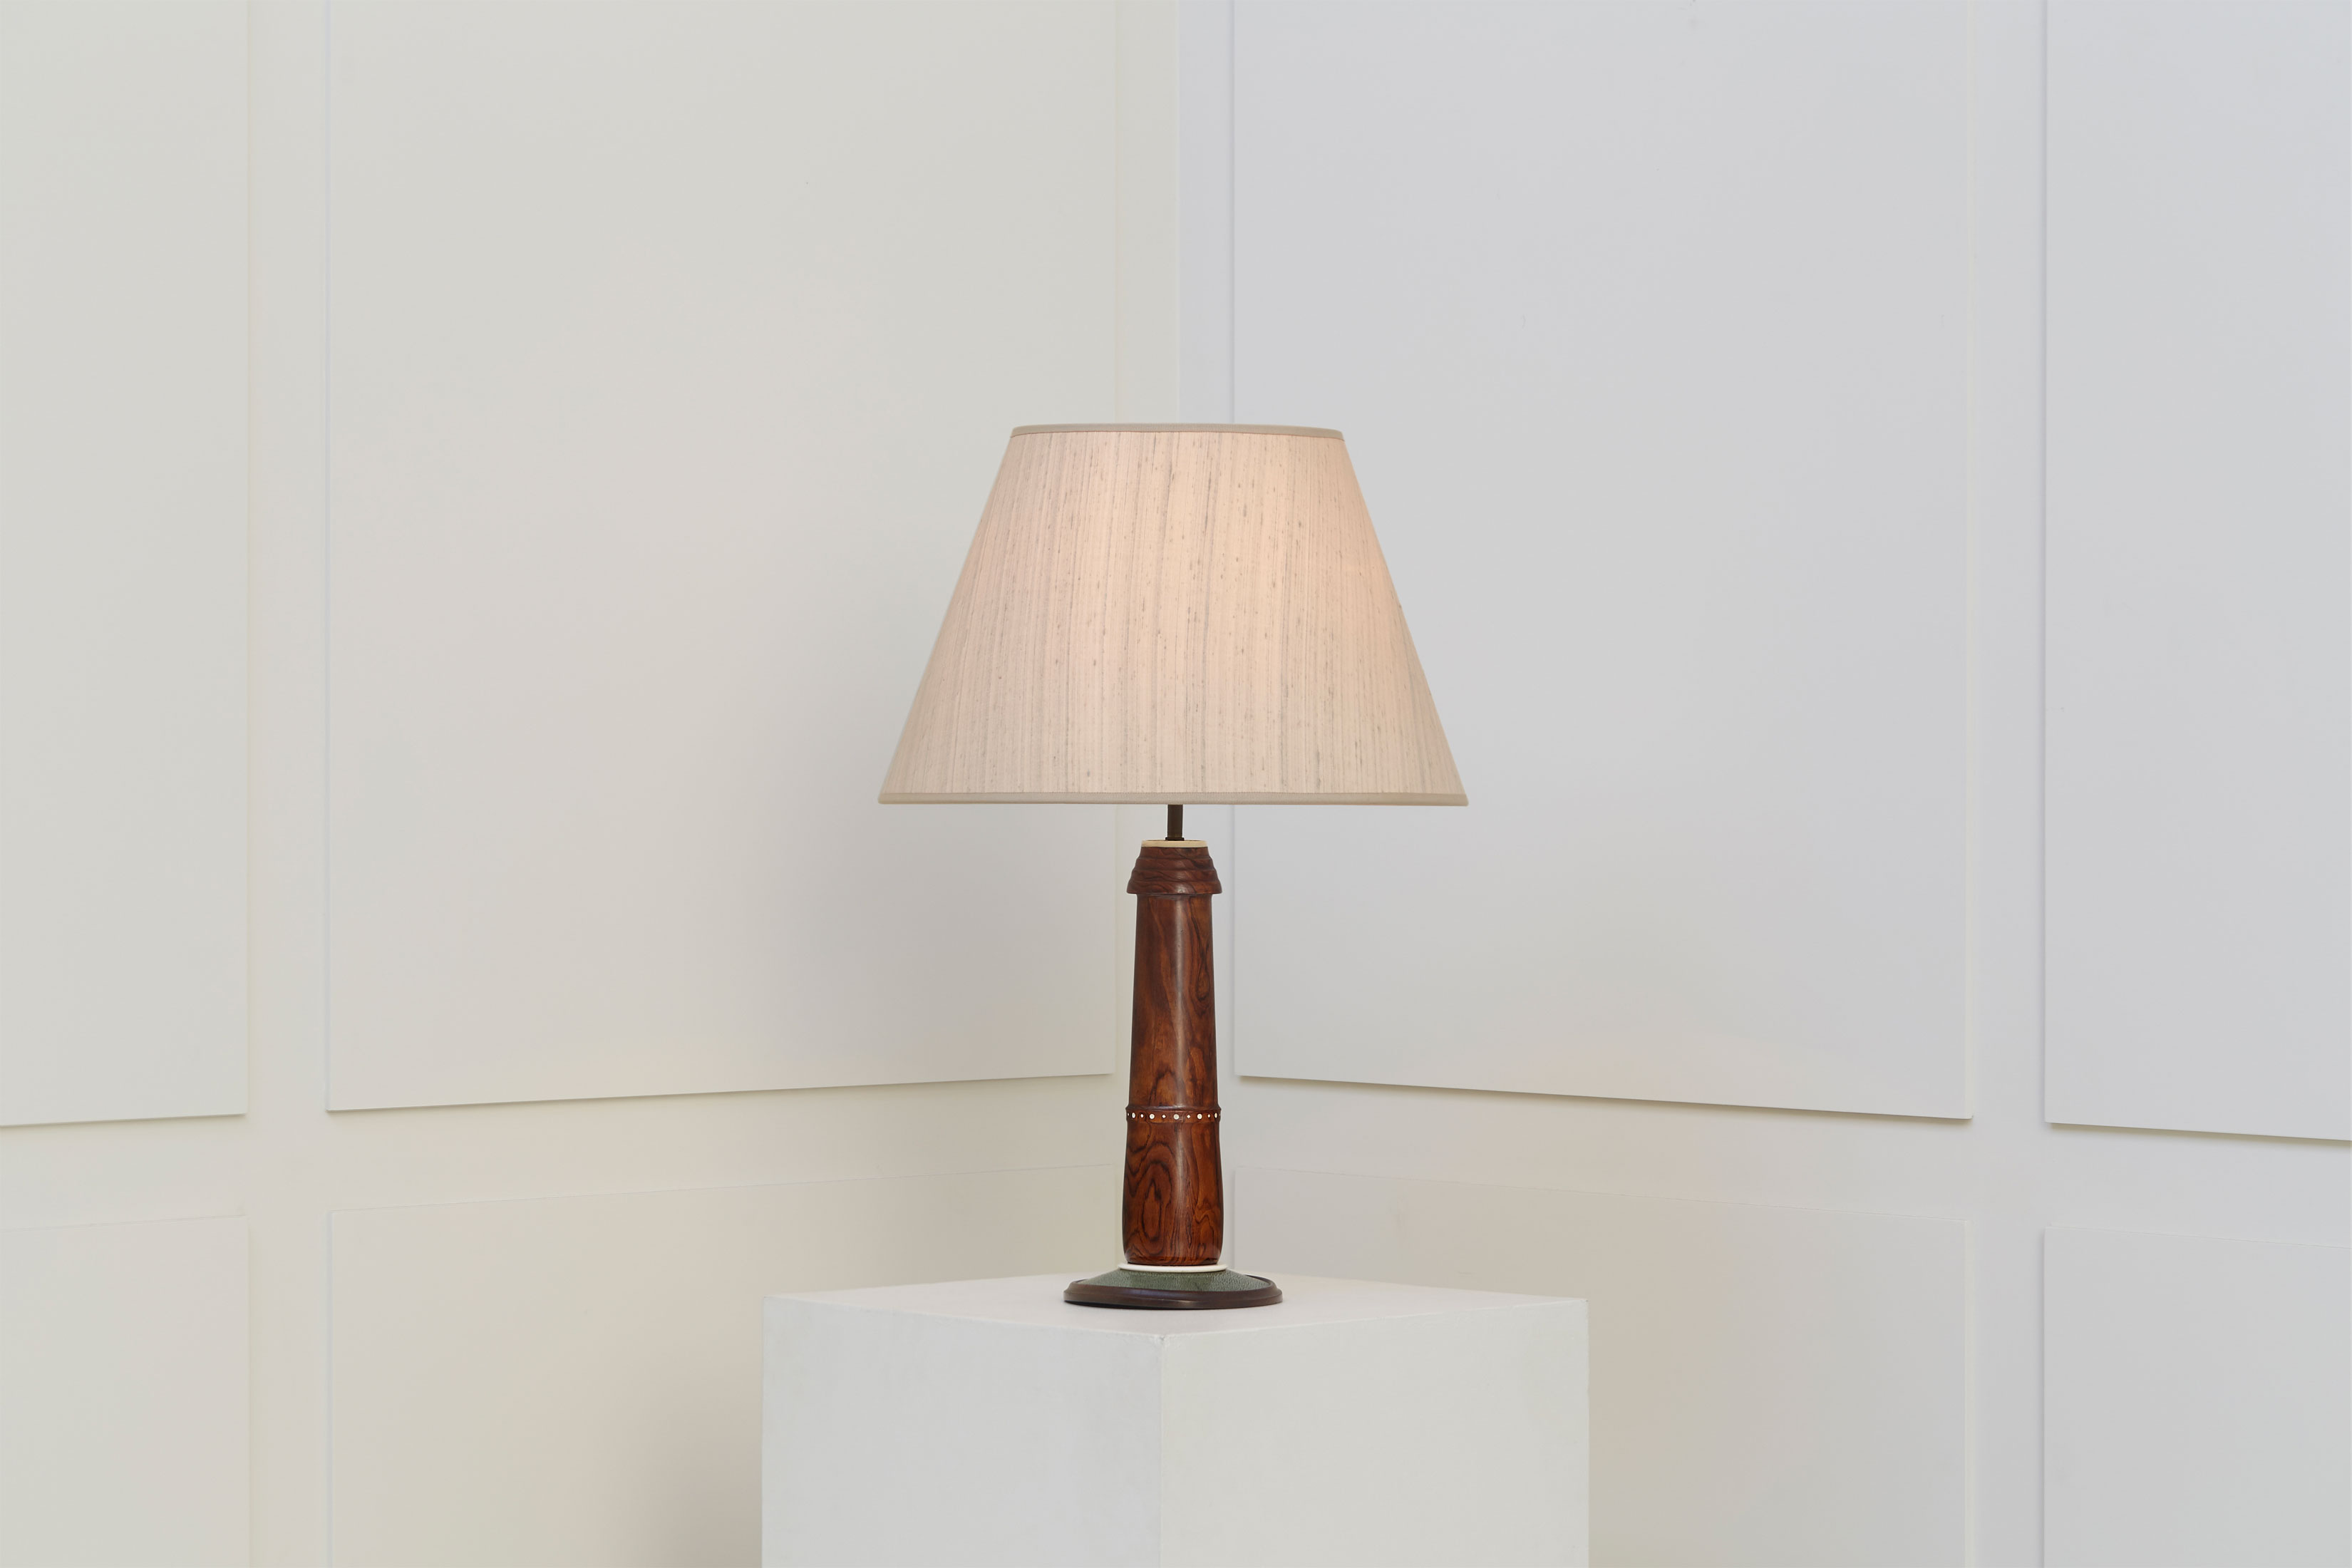 Clément Rousseau, Rare lamp, vue 02